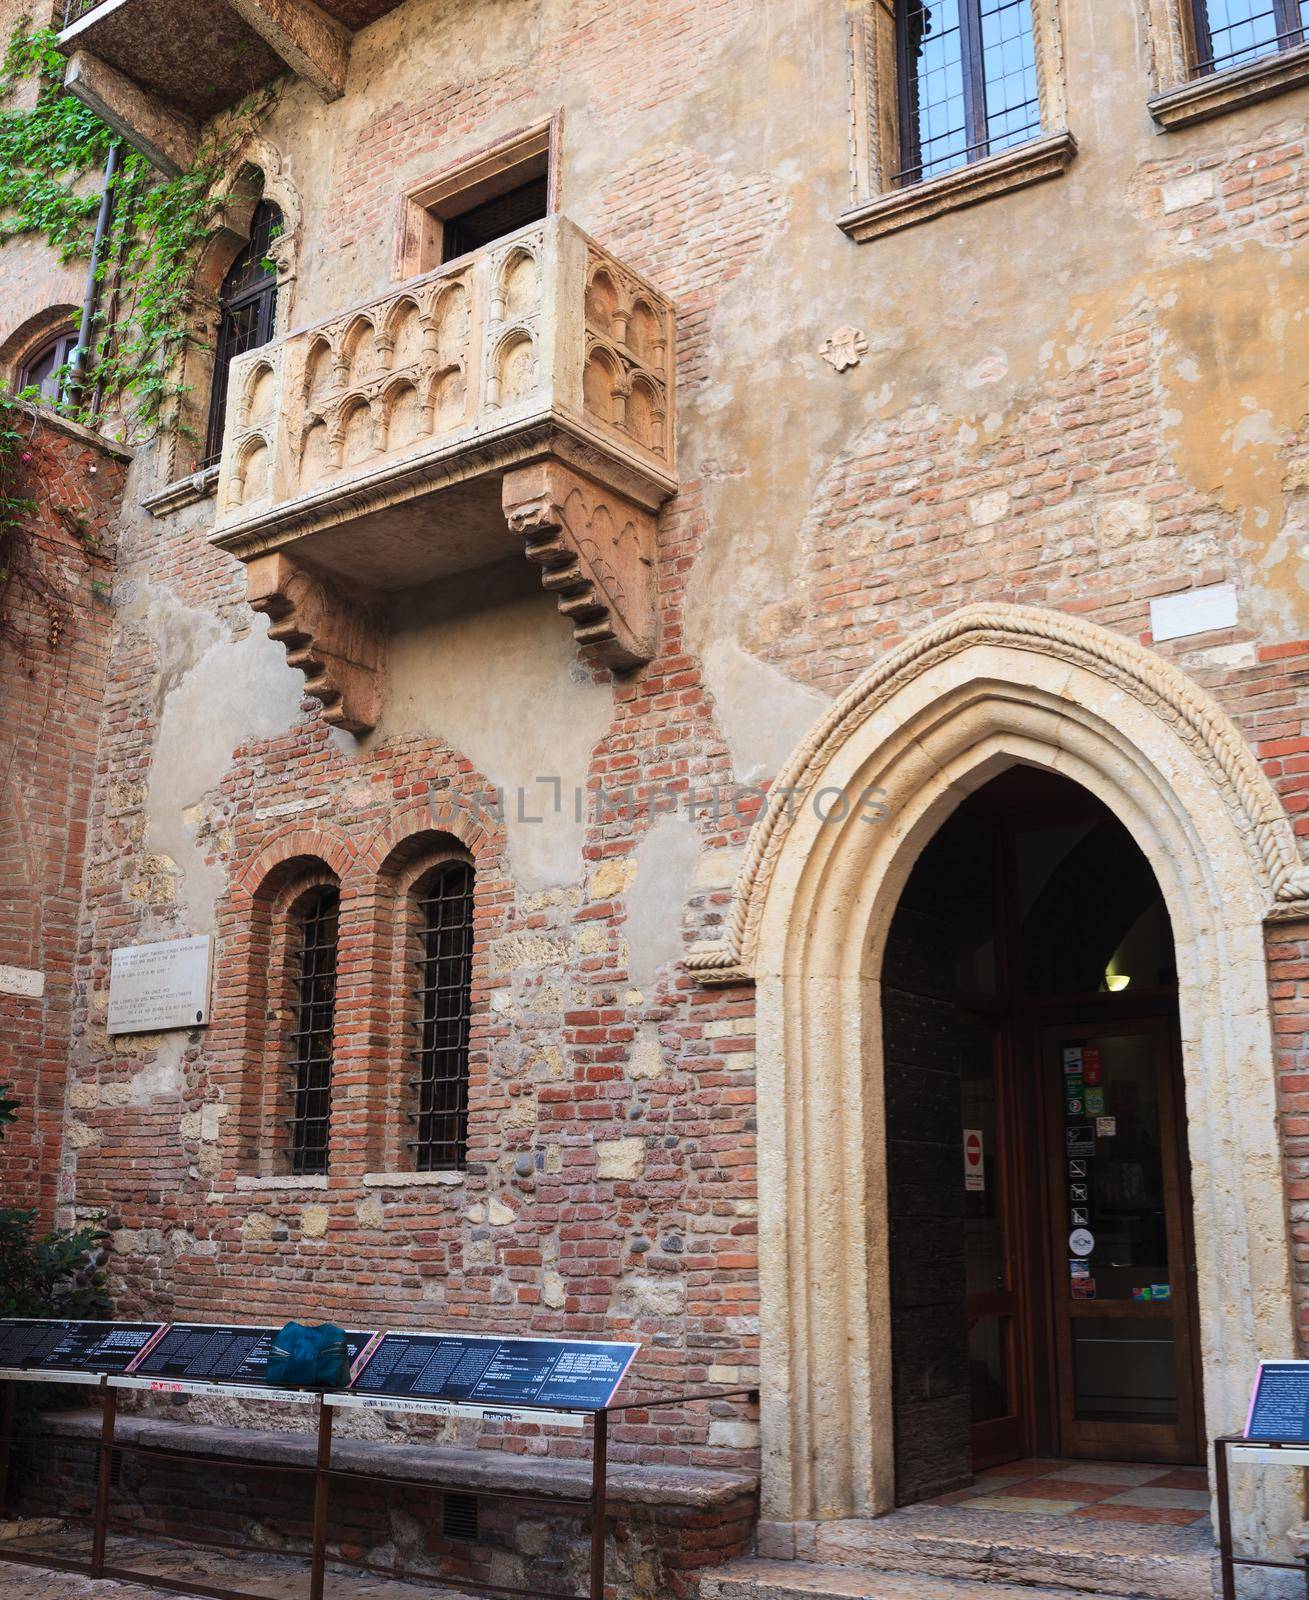 View of the Juliet's Balcony in Verona